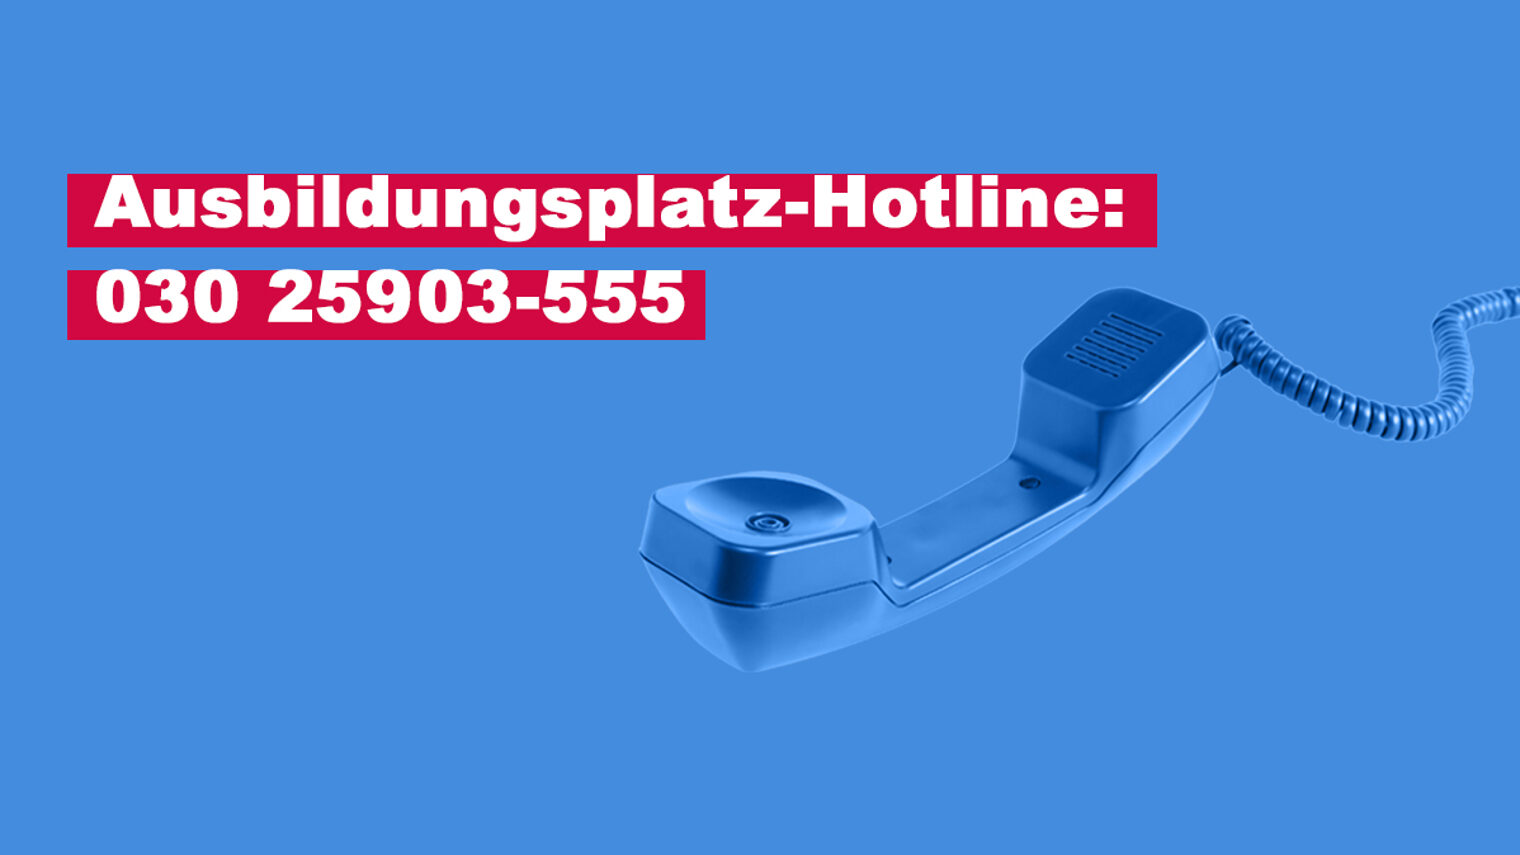 Telefon, Ausbildung, Hotline, Berliner Handwerk